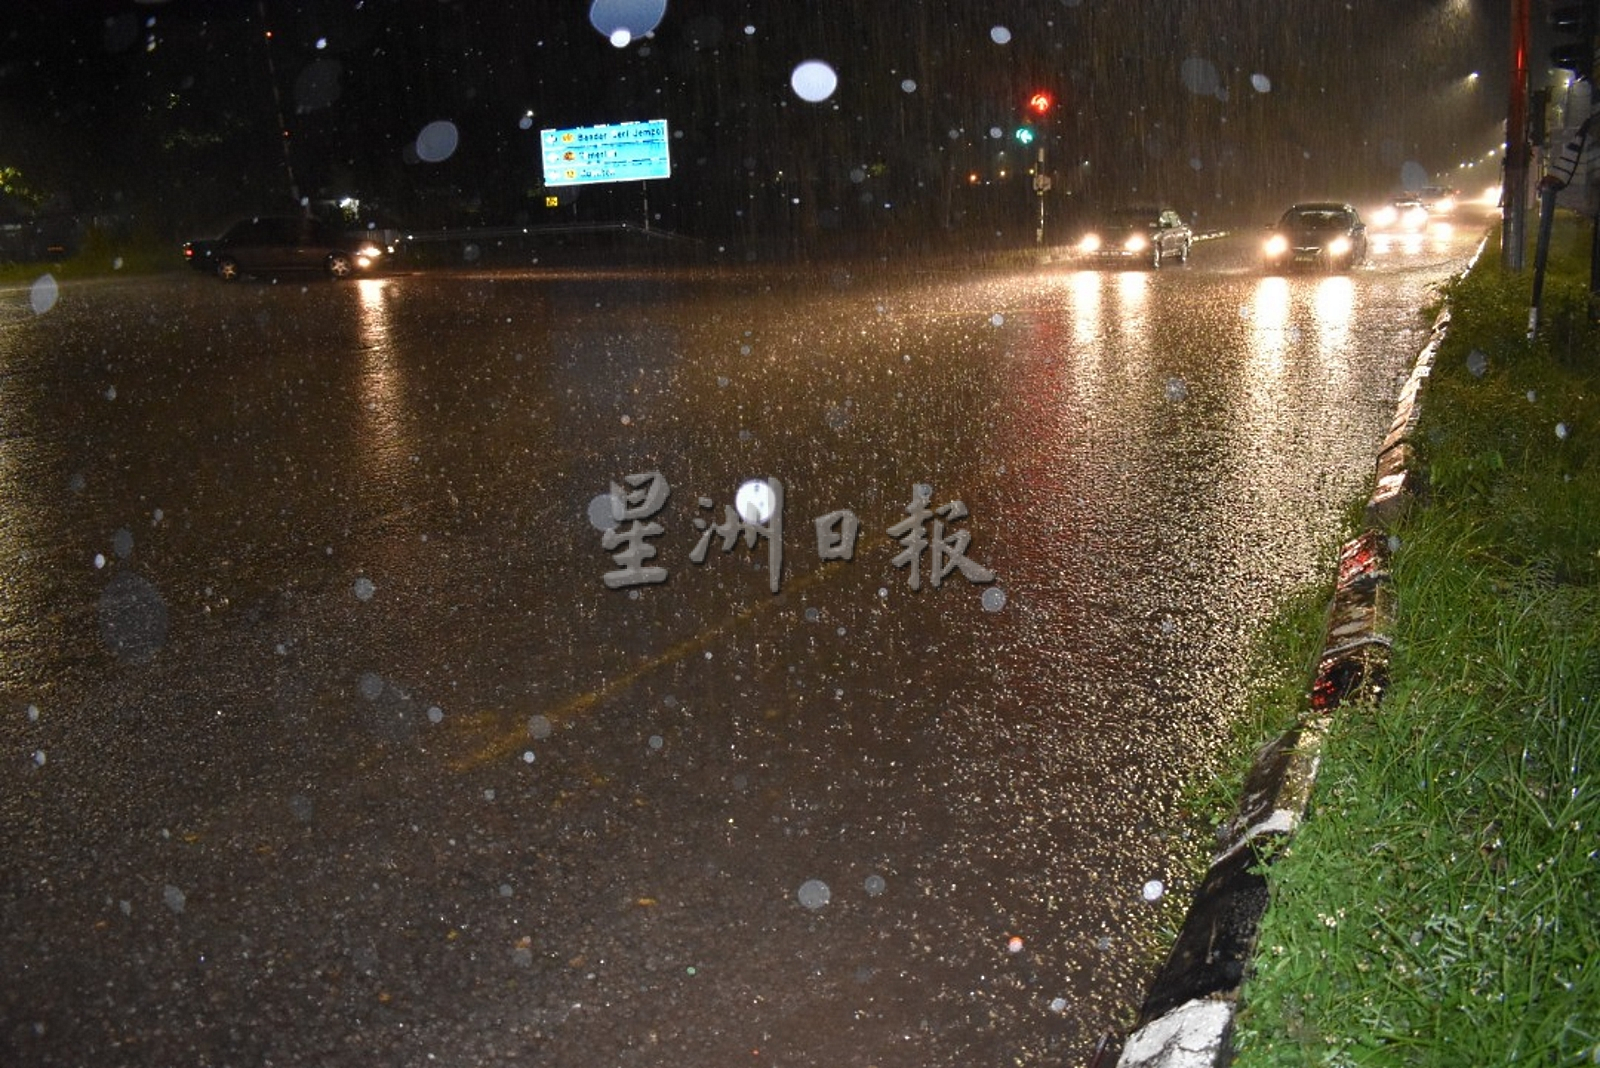 NS马口:锺绘名呼吁公共工程局关注广合路口逢雨必淹现象